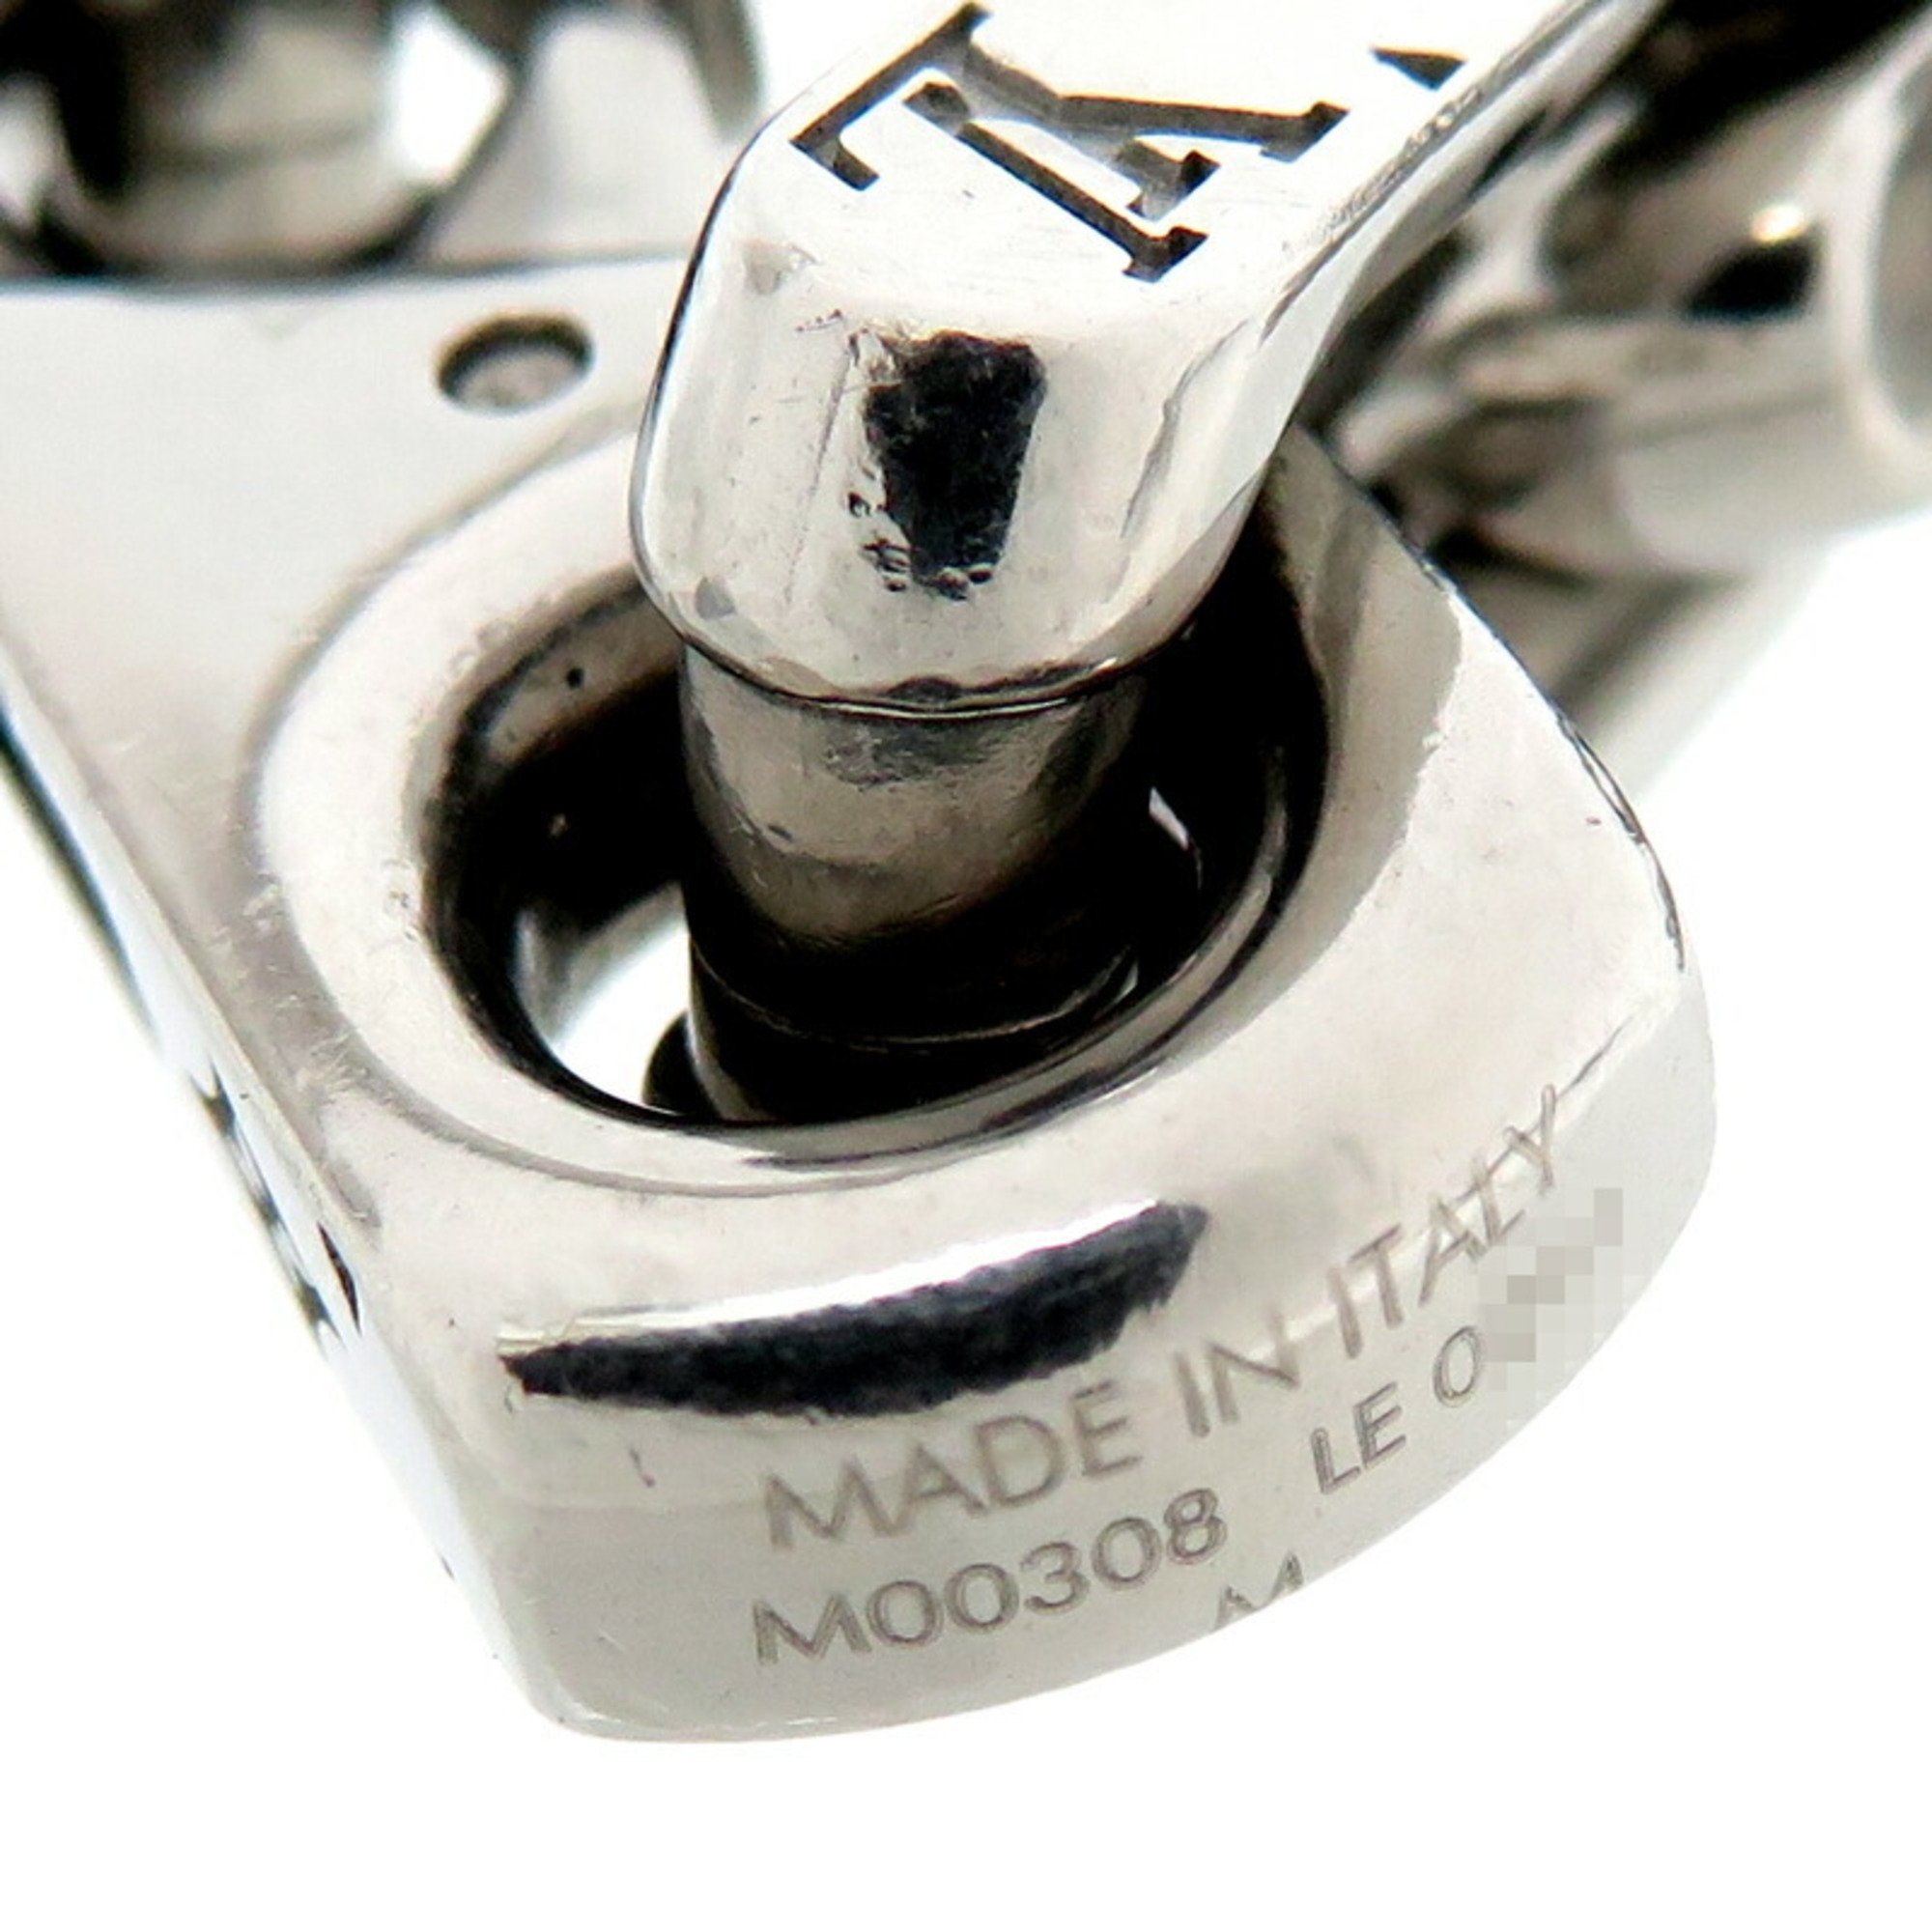 Louis Vuitton Chain Monogram Men's Bracelet M00308 Metal